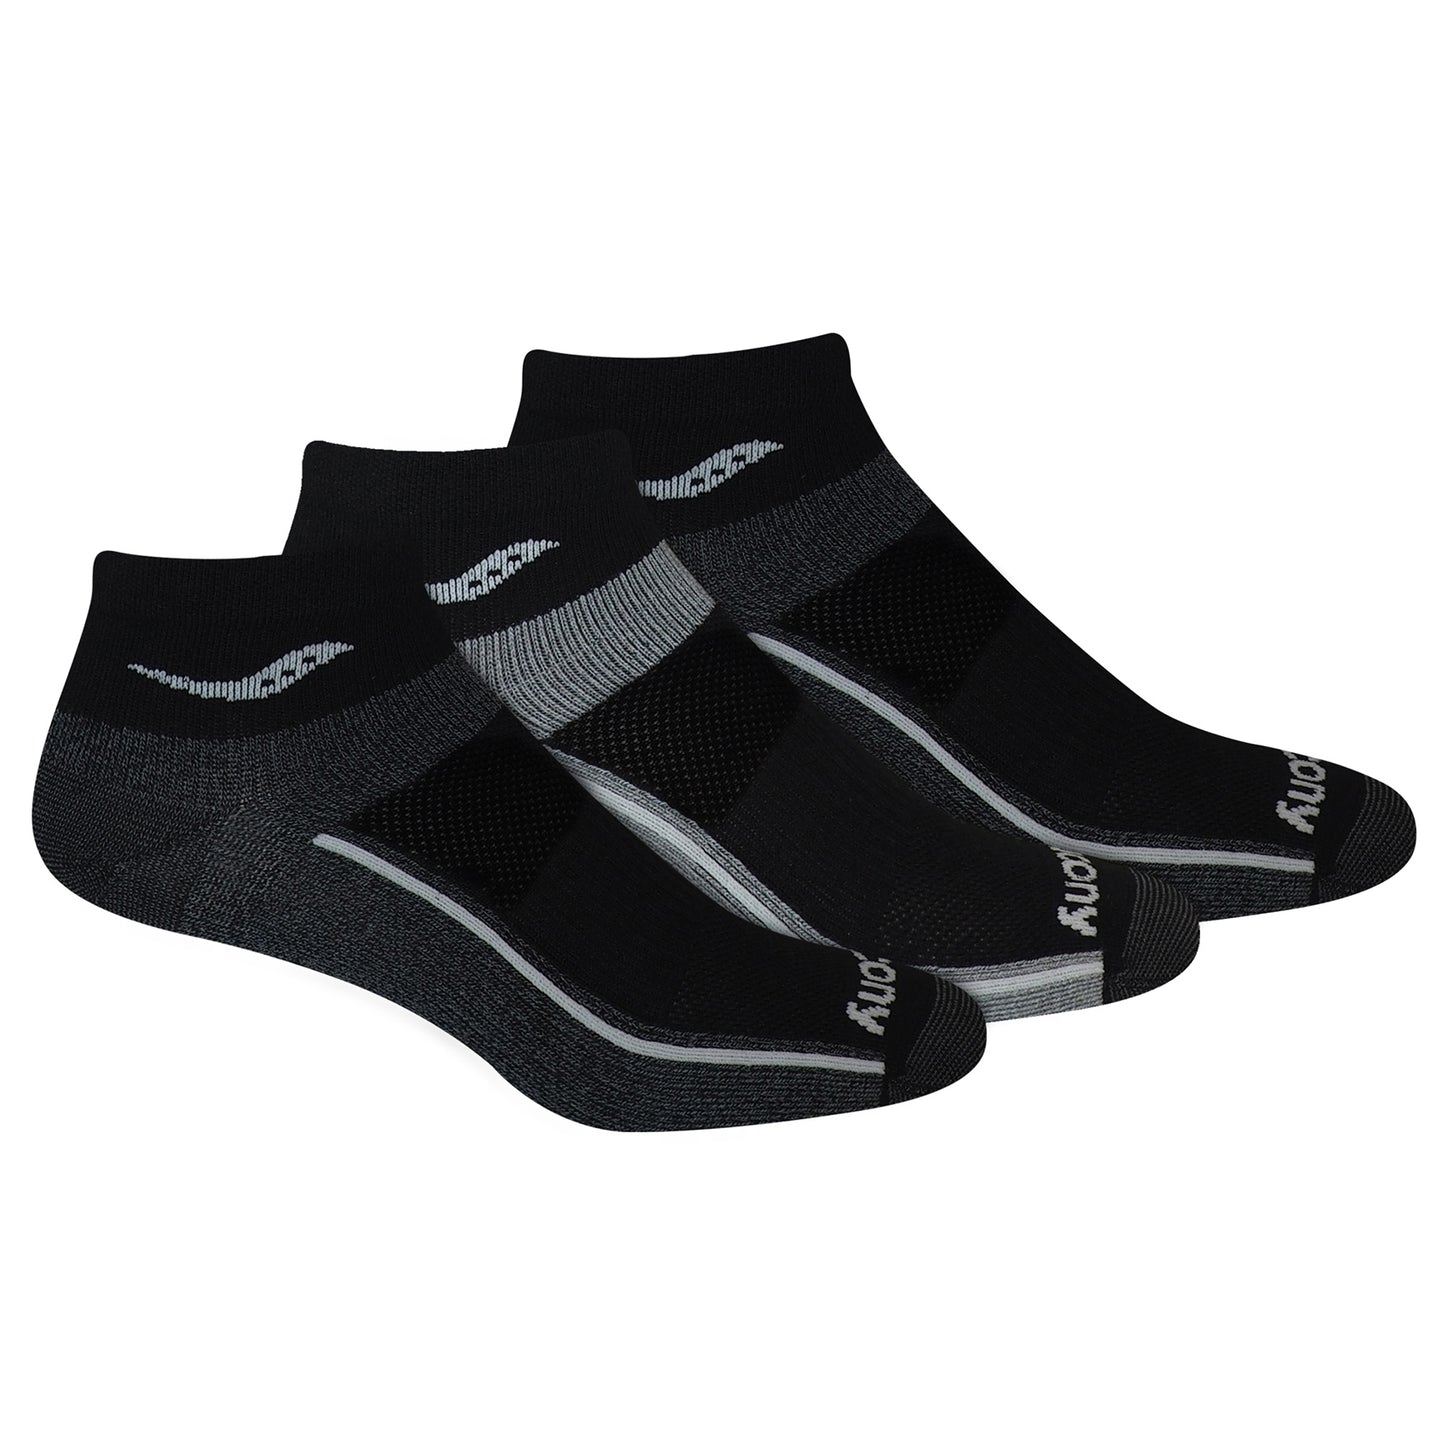 Unisex Inferno Ultralight Quarter Socks - Black Assorted 3-pack